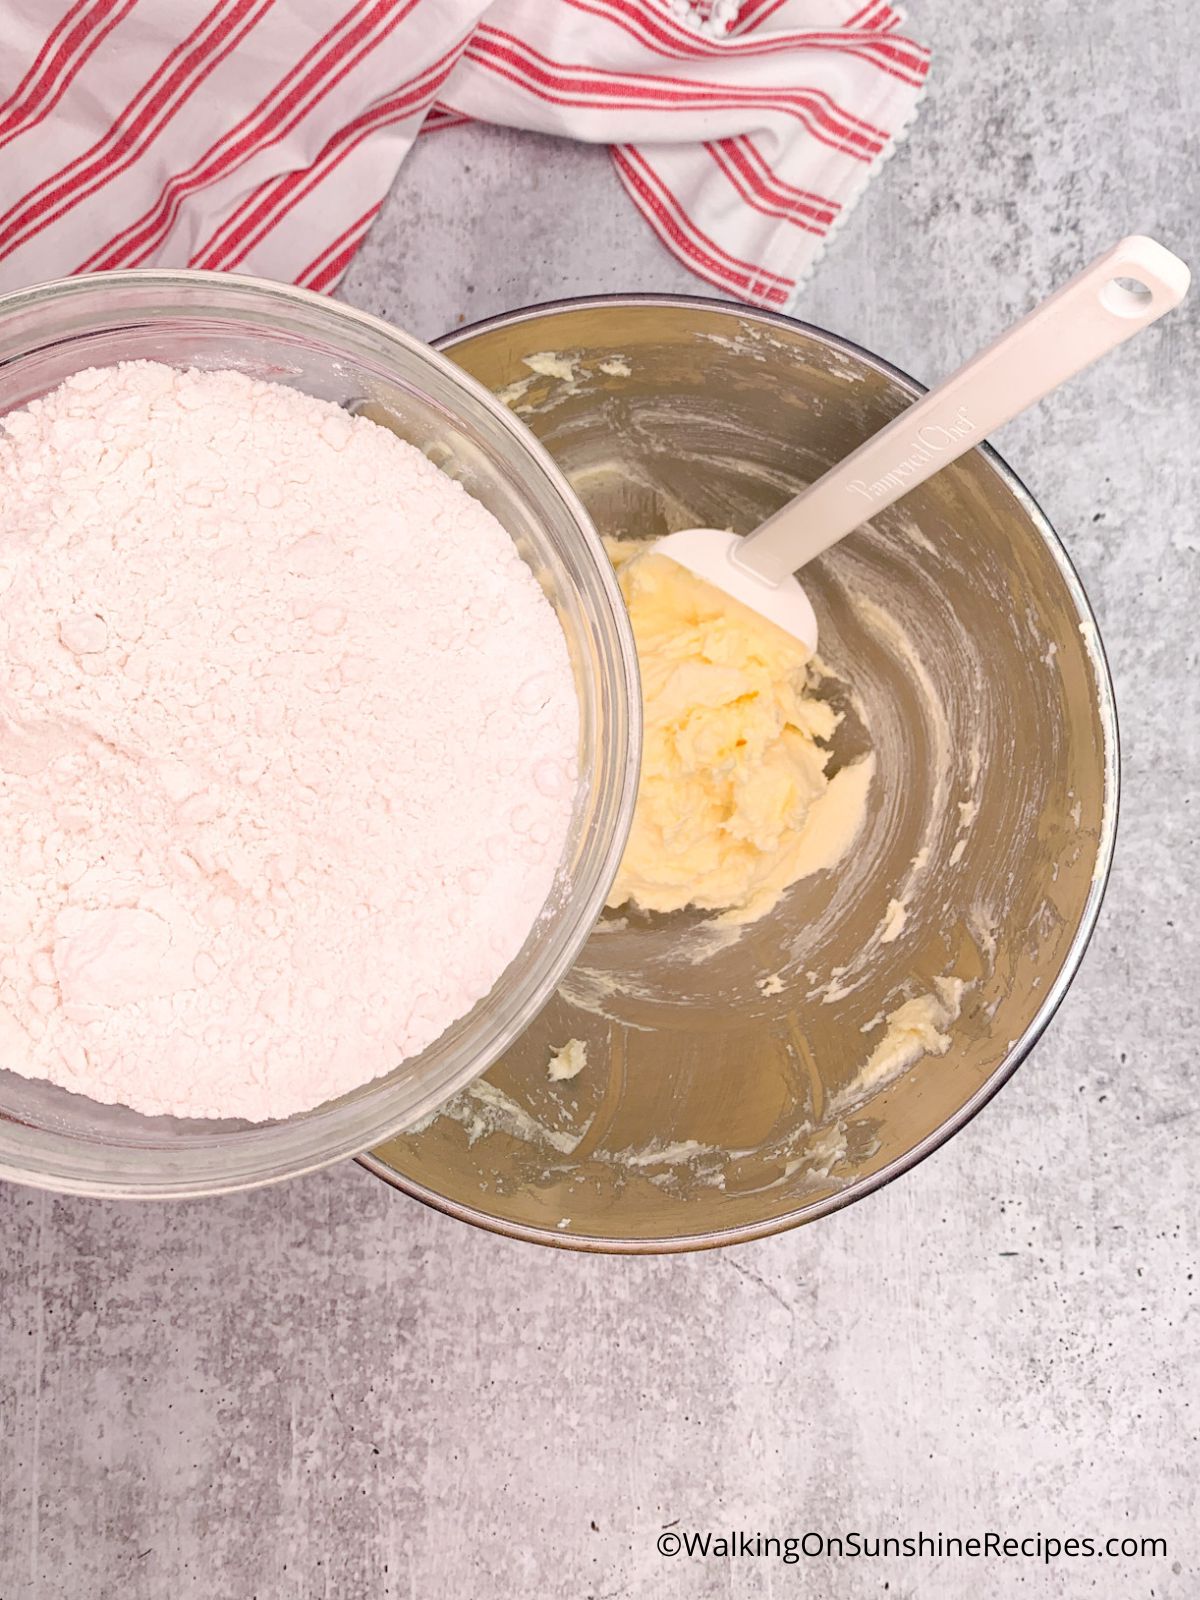 Add flour to butter sugar mixture.